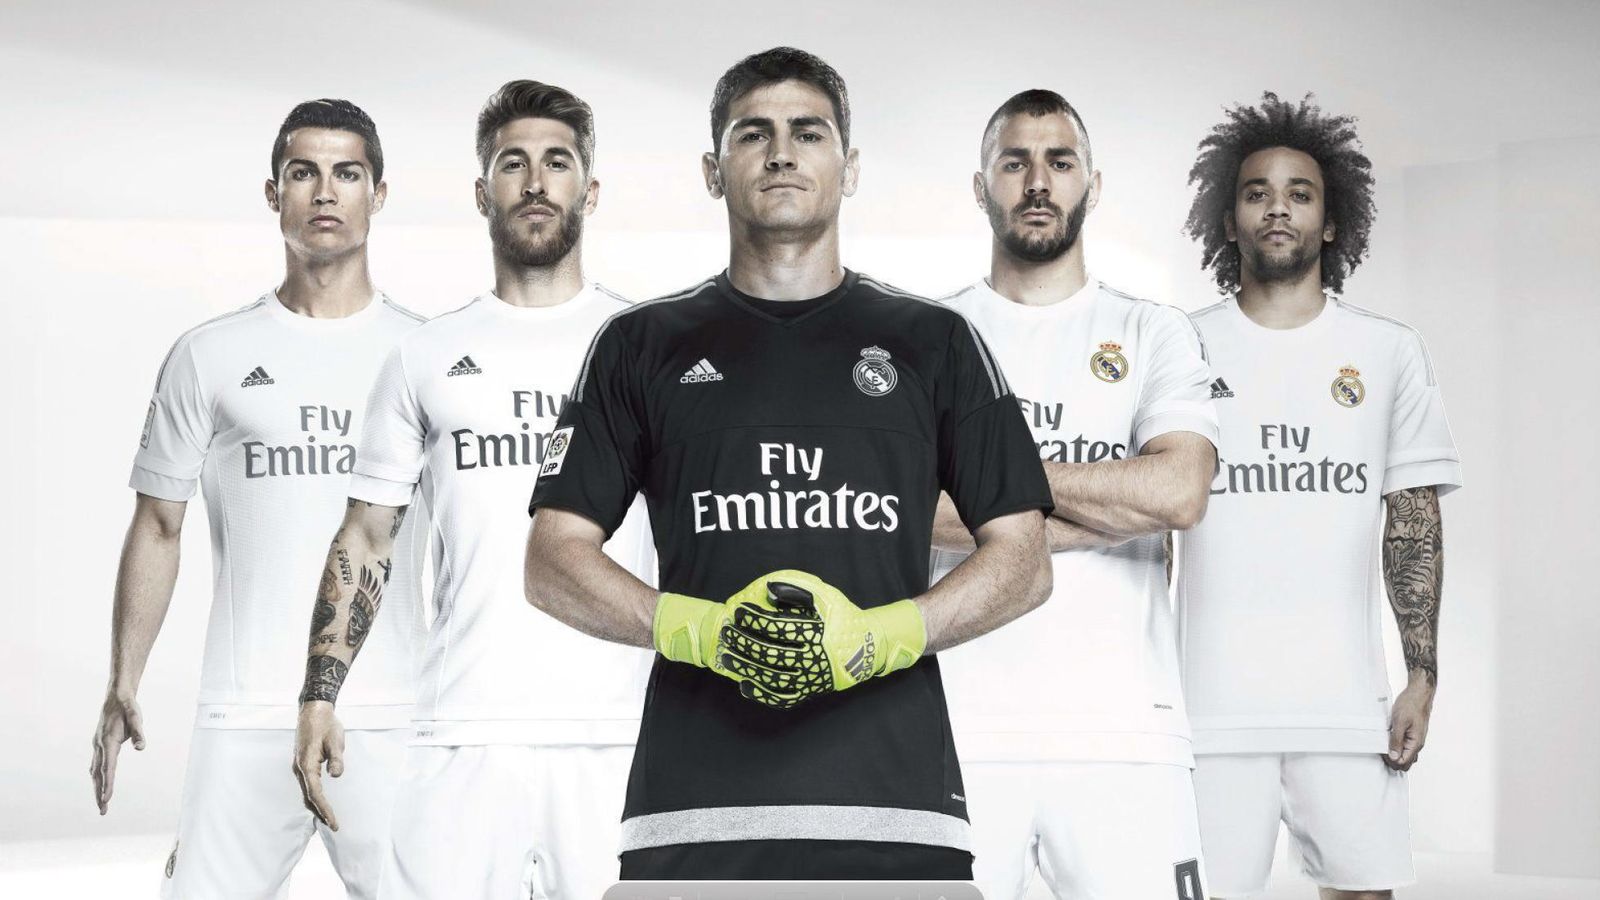 Foto: Presentación de la nueva camiseta del Real Madrid, con Cristiano, Ramos, Casillas, Benzema y Marcelo